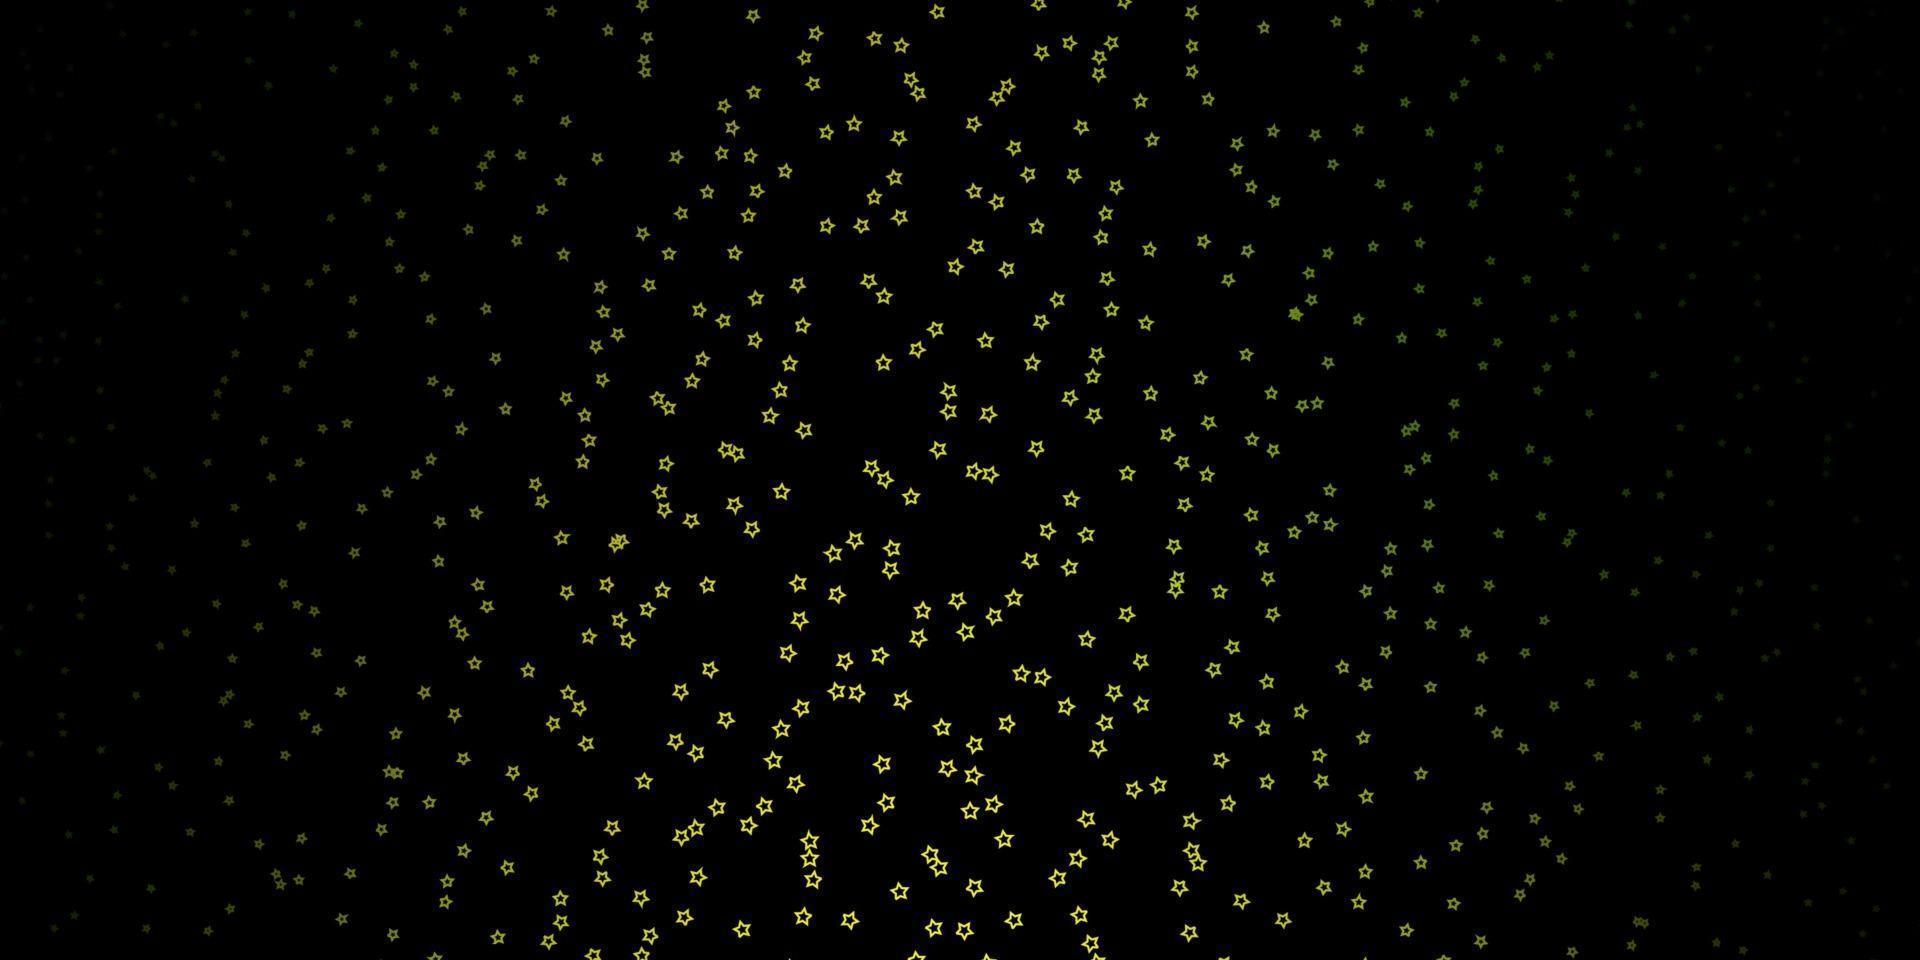 Fondo de vector verde oscuro, amarillo con estrellas pequeñas y grandes.